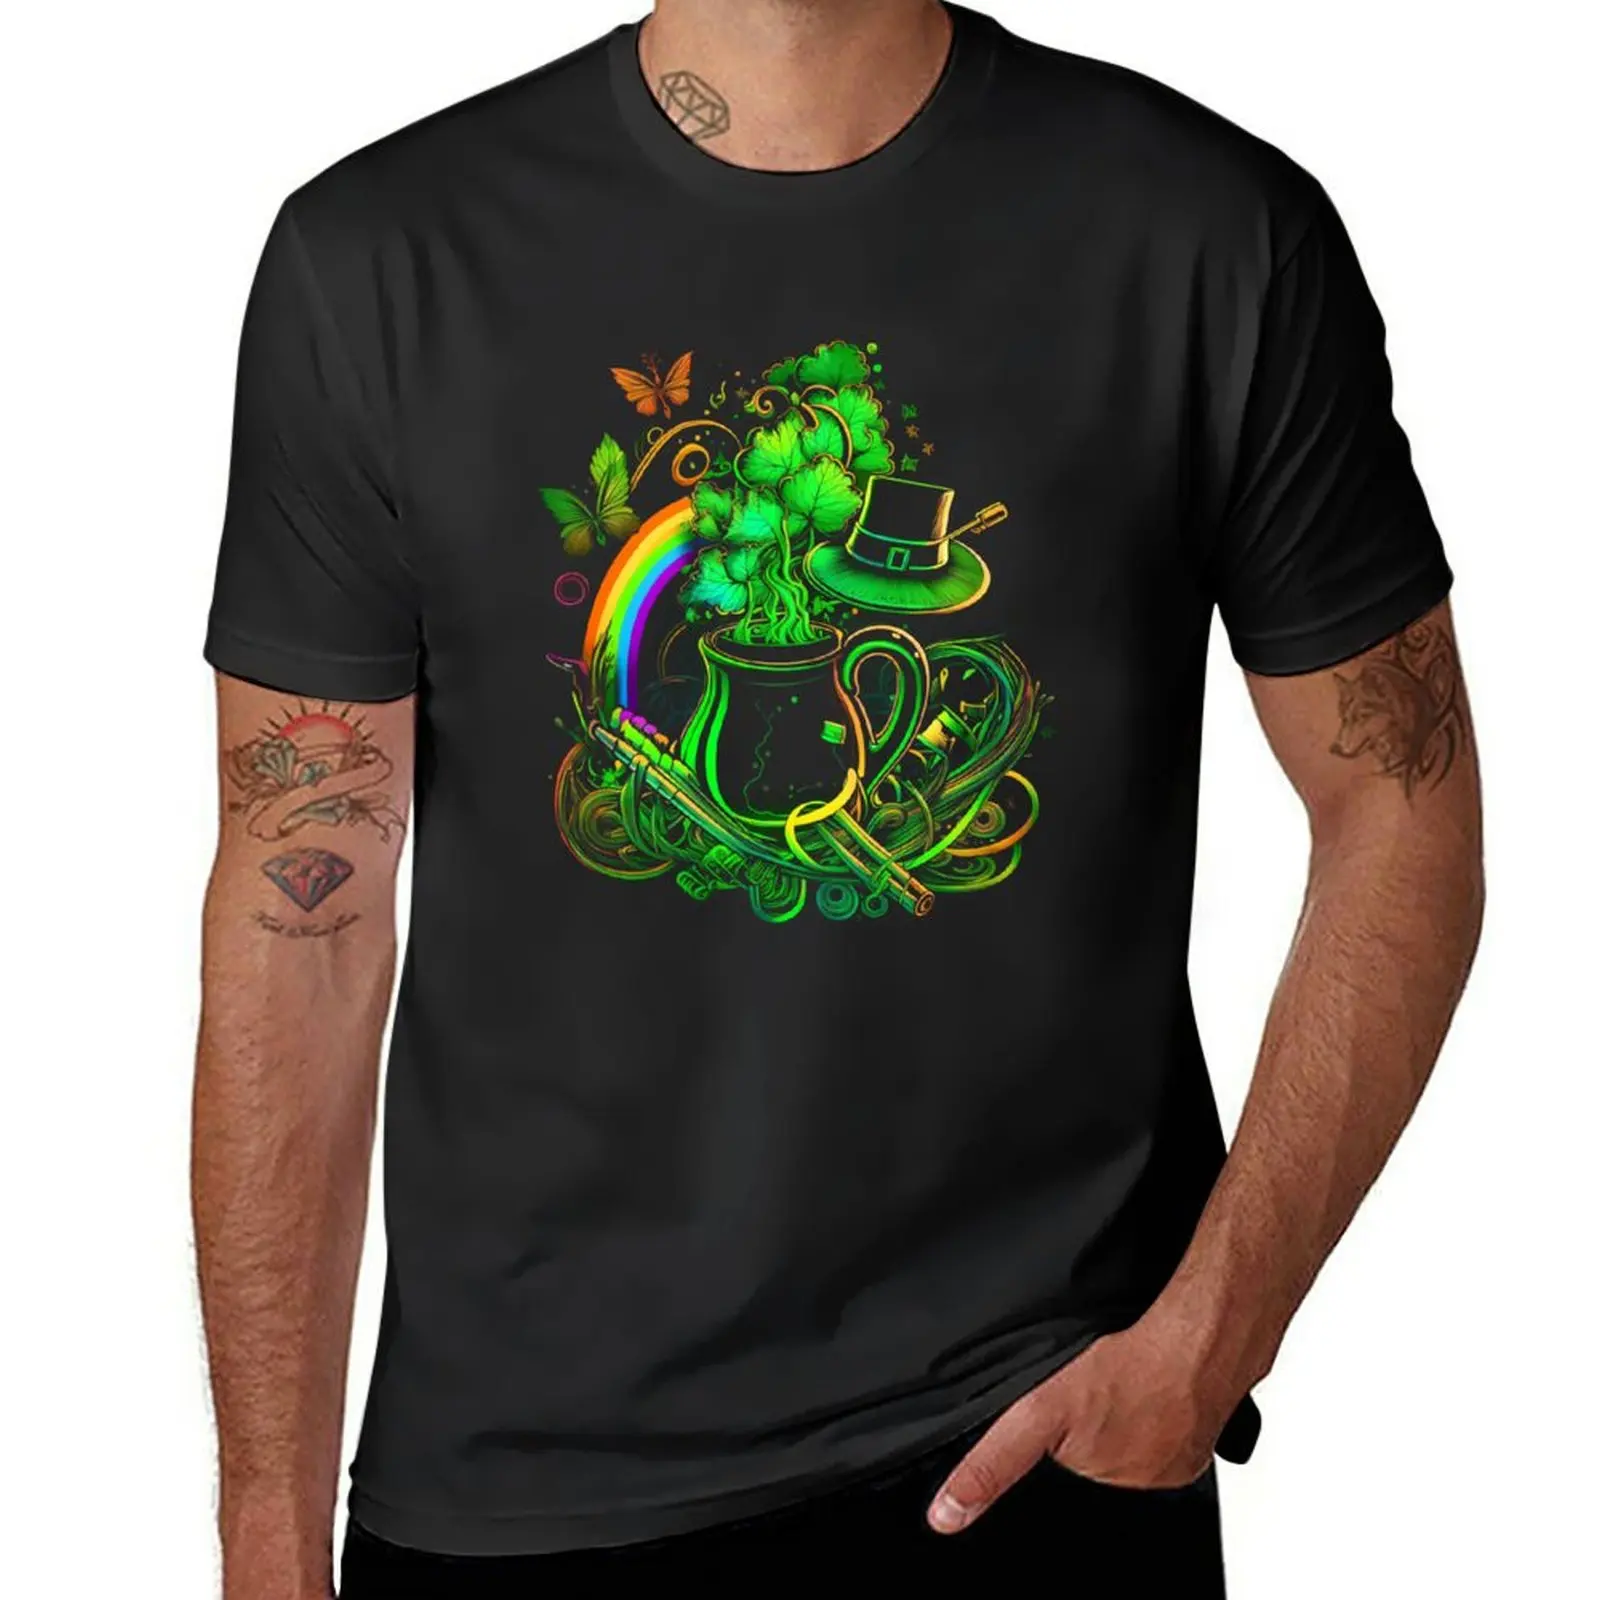 Новая футболка с рисунком горшка с трилистниками и радуги, футболки больших размеров, черная футболка, мужская тренировочная рубашка